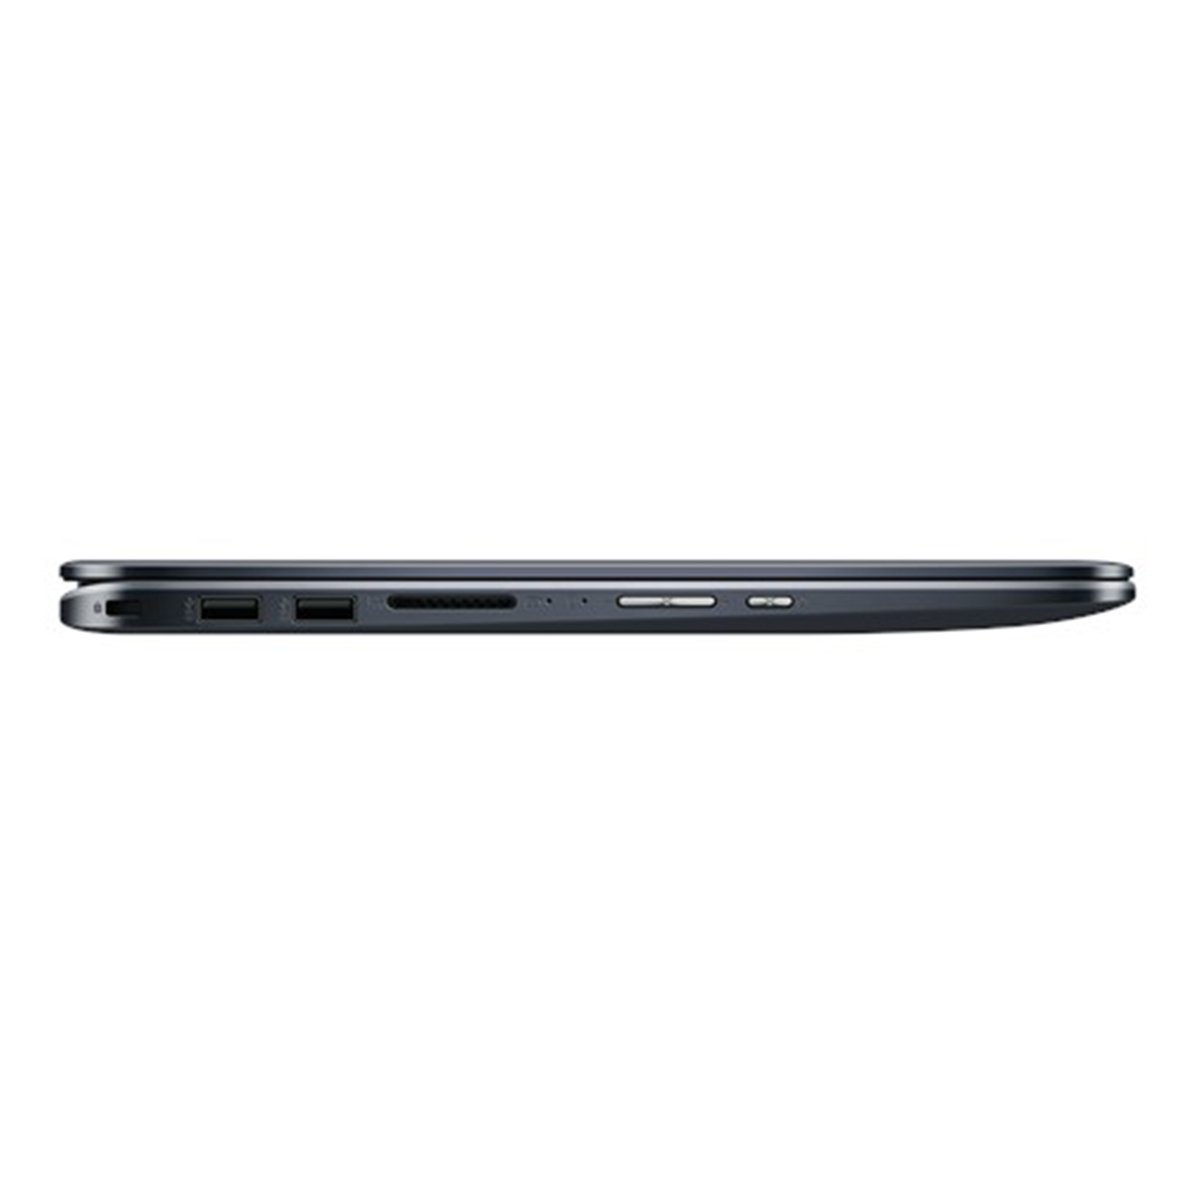 Asus Notebook TP410UF-EC030T Core i7 Grey